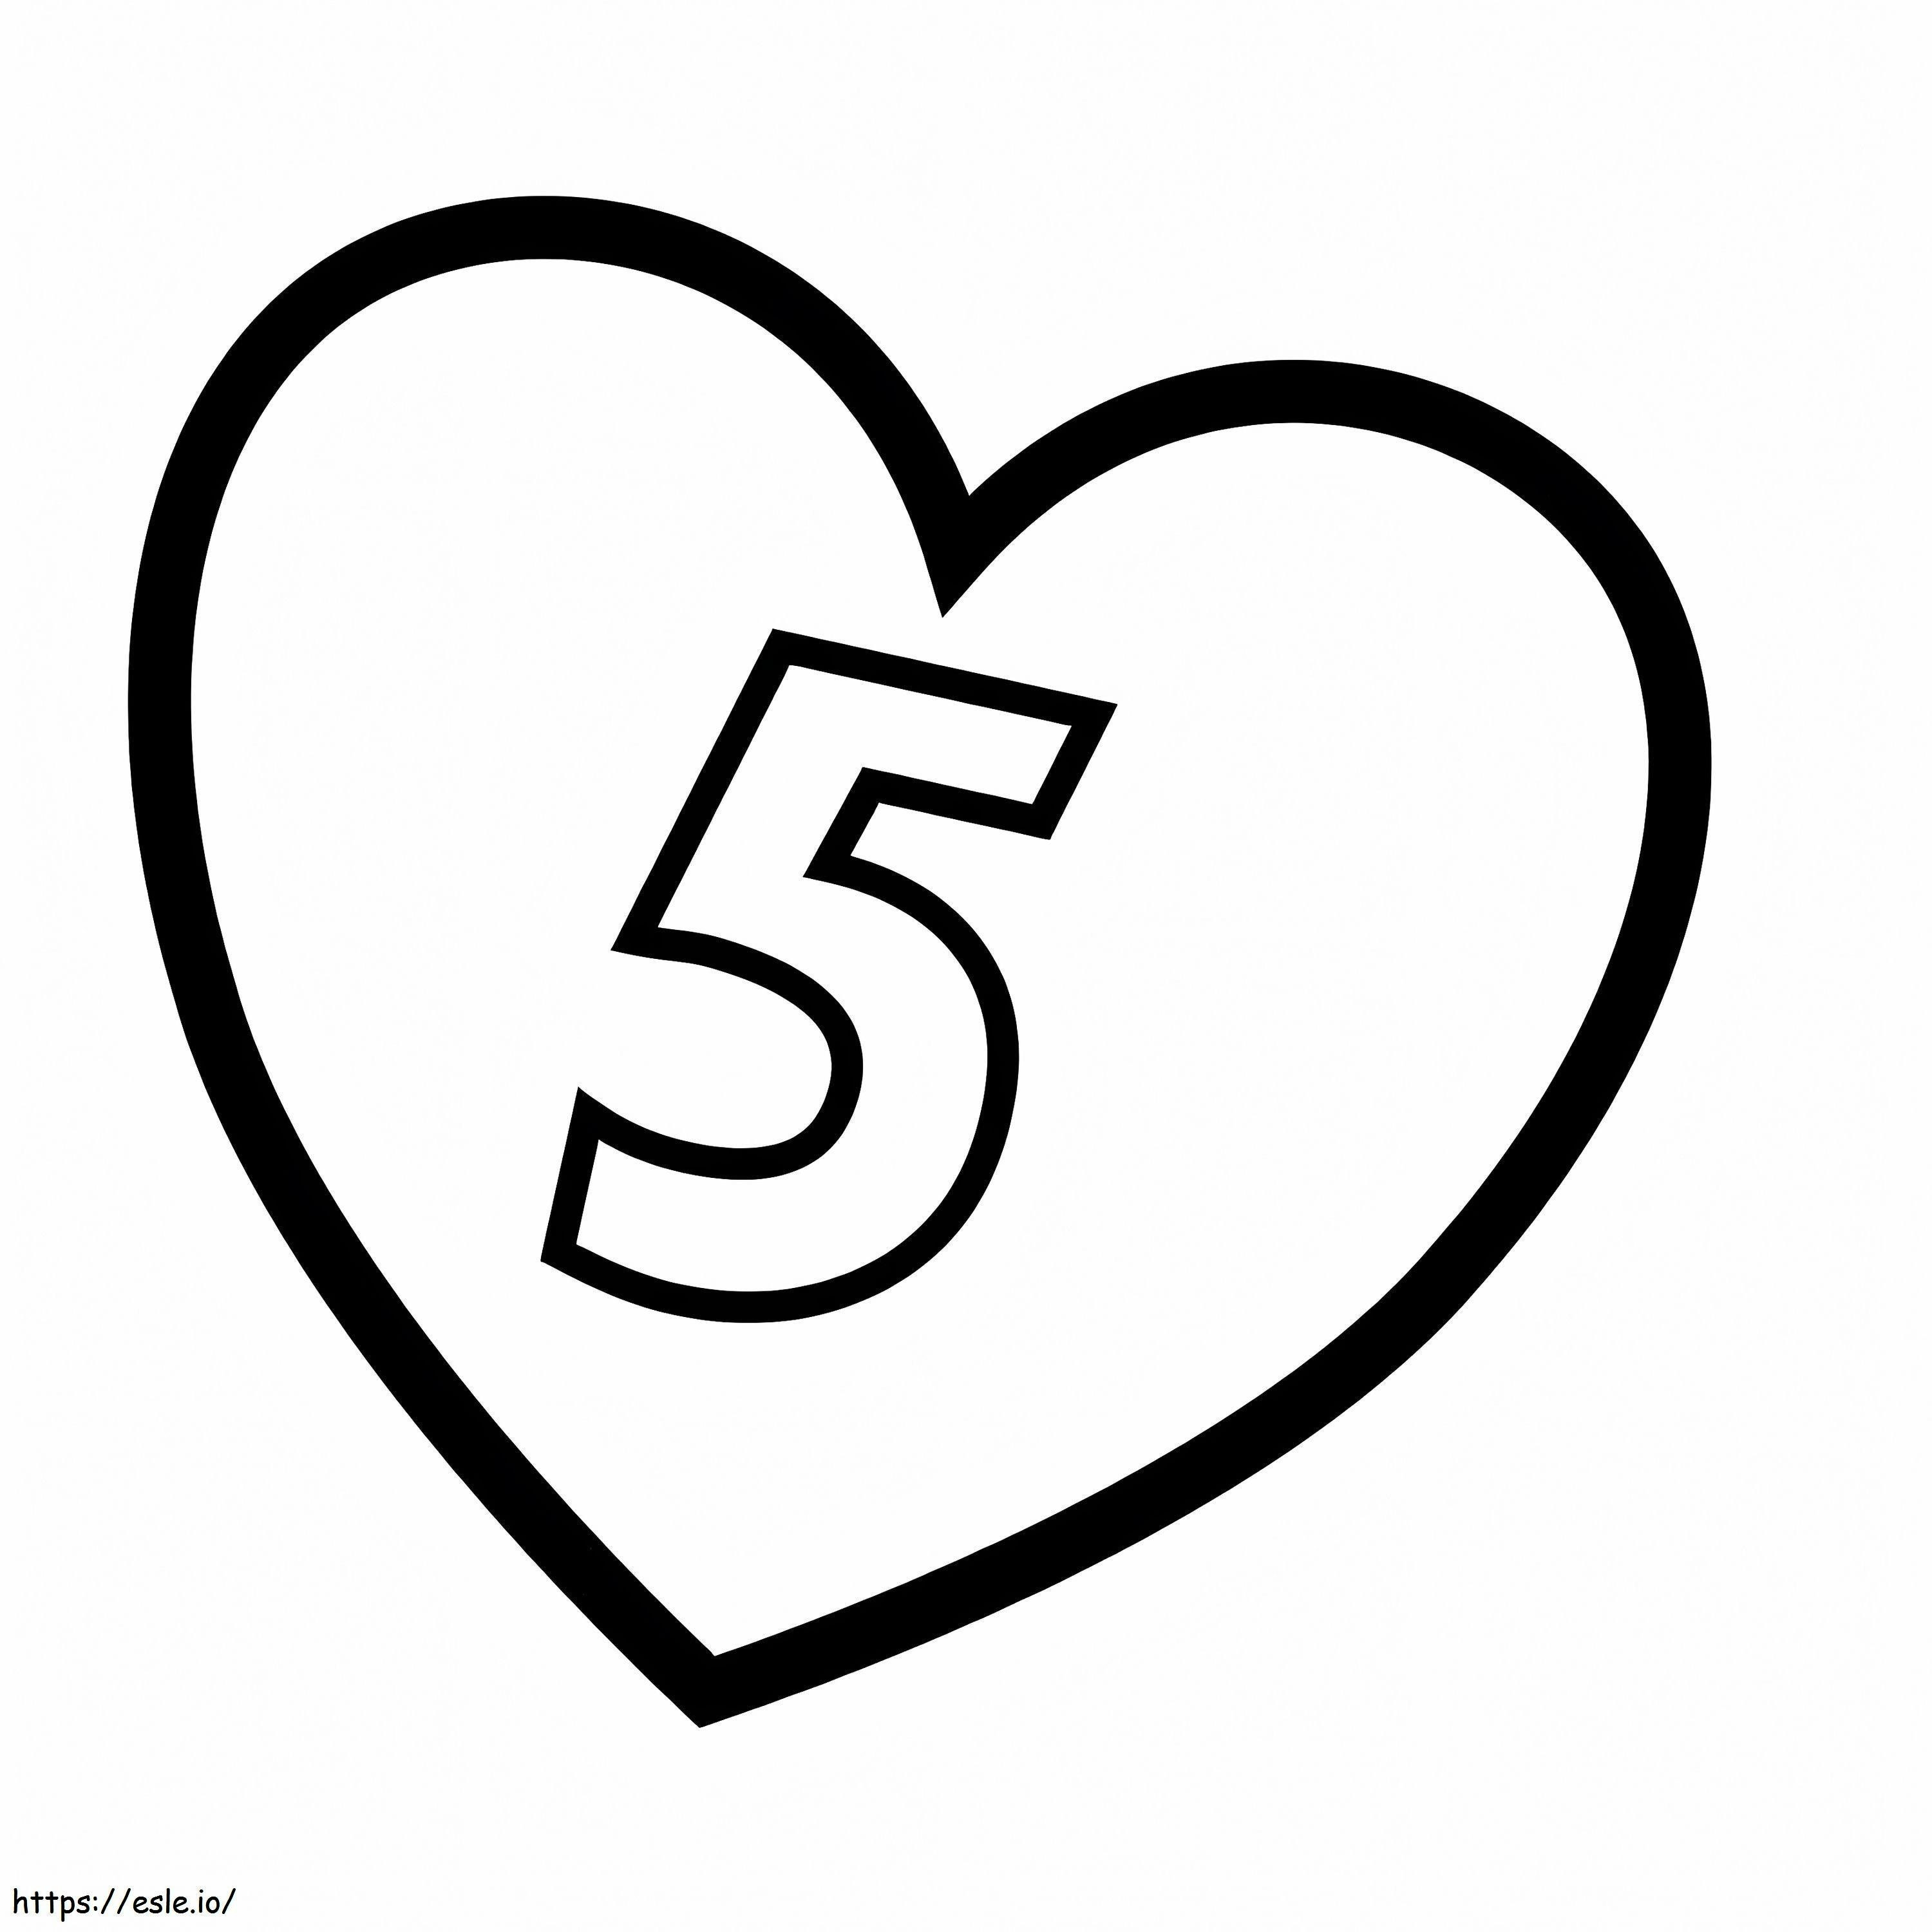 Numer 5 w sercu kolorowanka